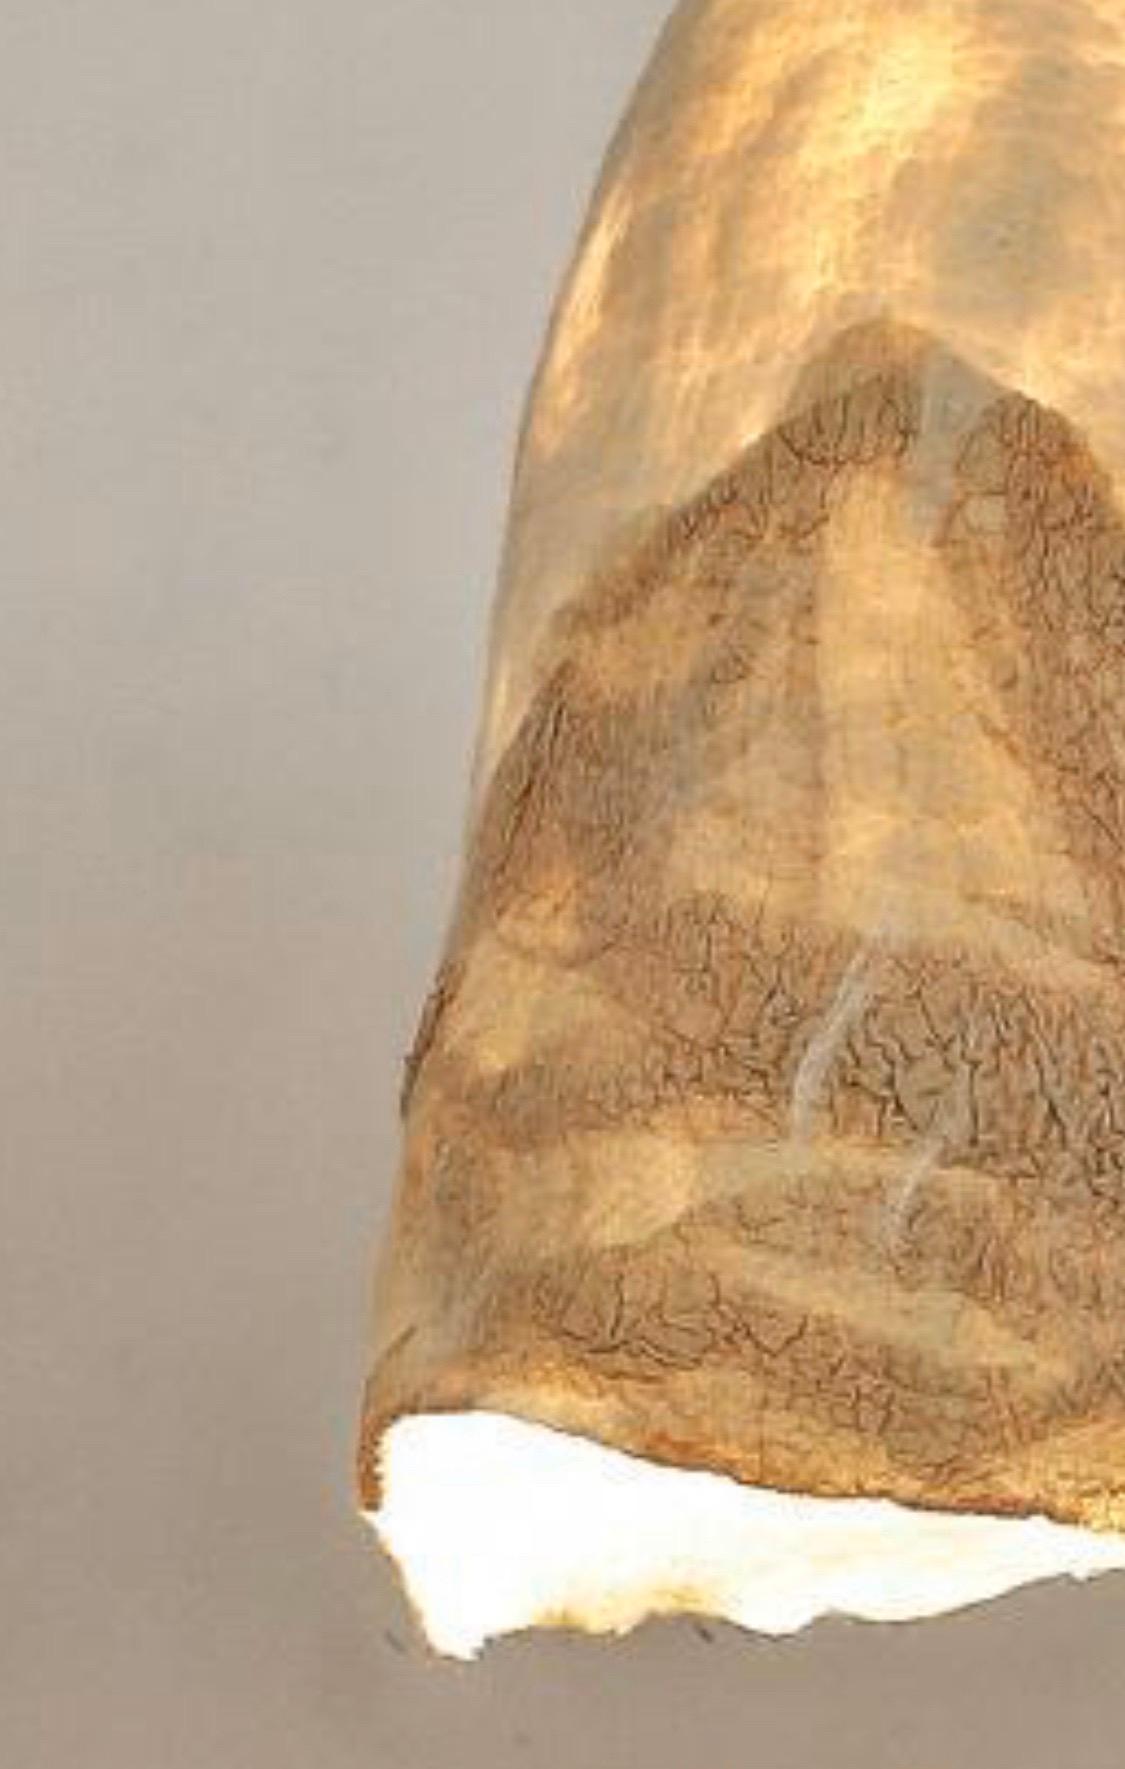 Die zeitgenössische Textildesignerin Inês Schertel fertigt vielseitige Artikel in einer sechstausend Jahre alten Technik. Jedes Stück ist einzigartig in Farbe und Form und wird nicht wie Textilien auf einem Webstuhl gewebt, sondern durch die Reibung